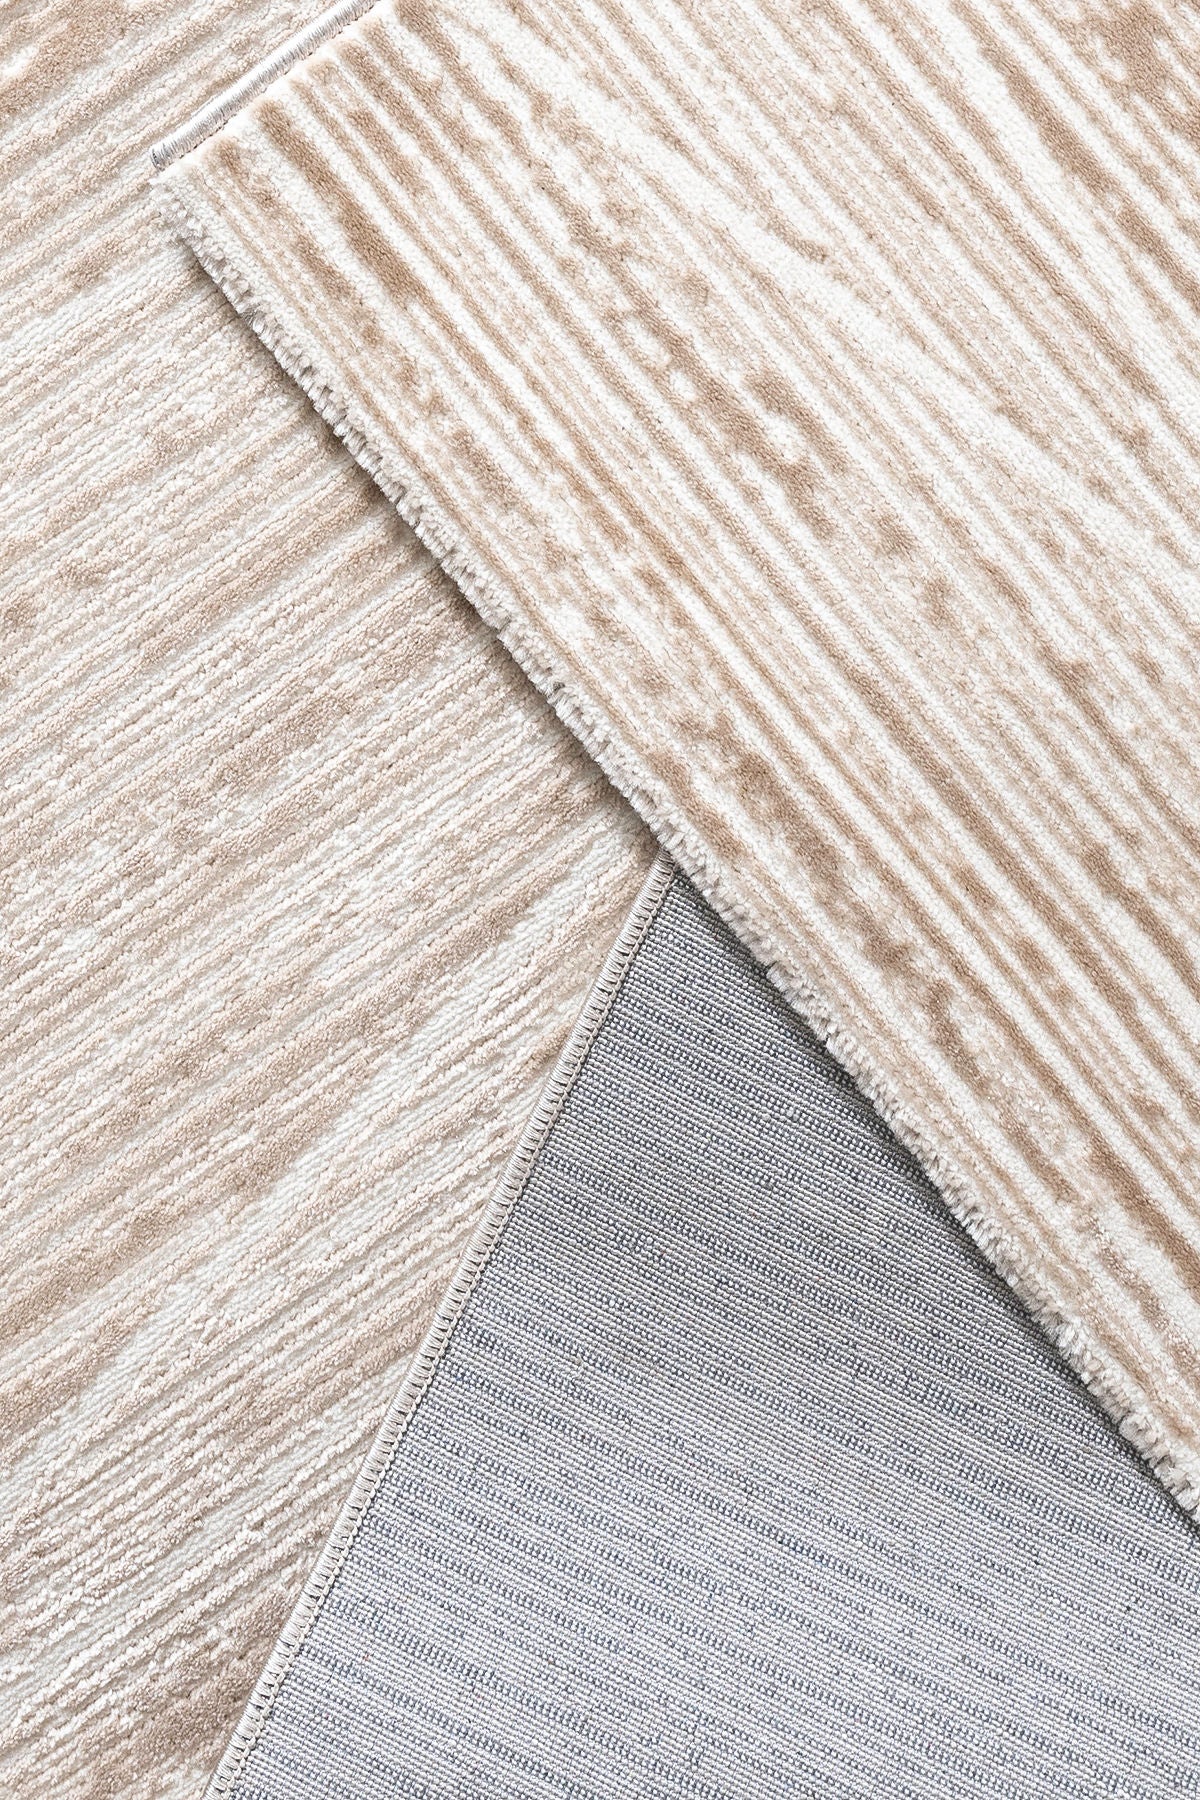 Moda 1510 - Beige - Carpet (80 x 150)